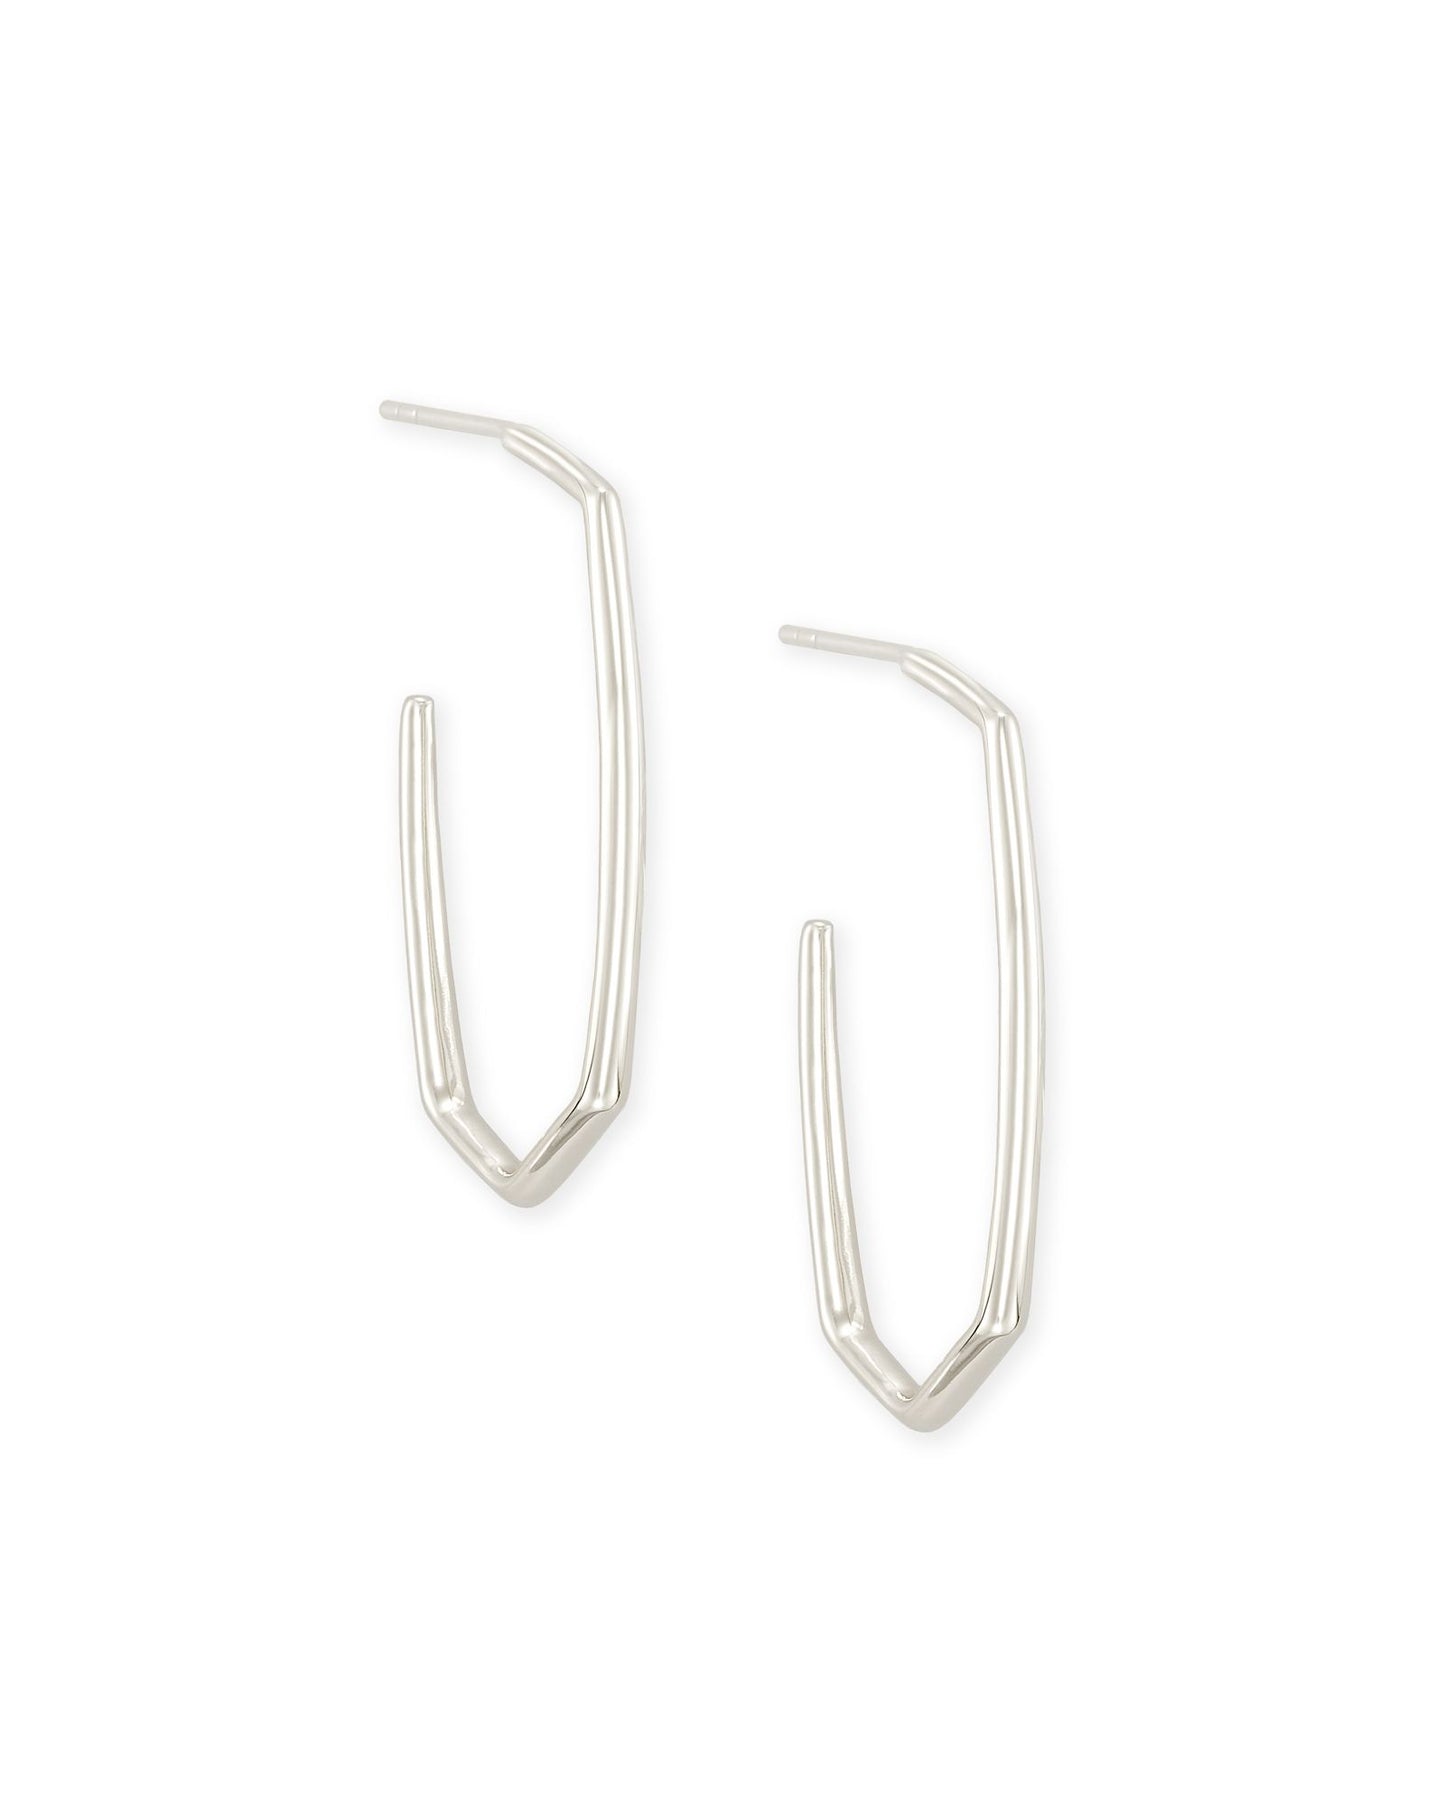 Kendra Scott Ellen Earrings Sterling Silver-Earrings-Kendra Scott-E1473SLV-The Twisted Chandelier